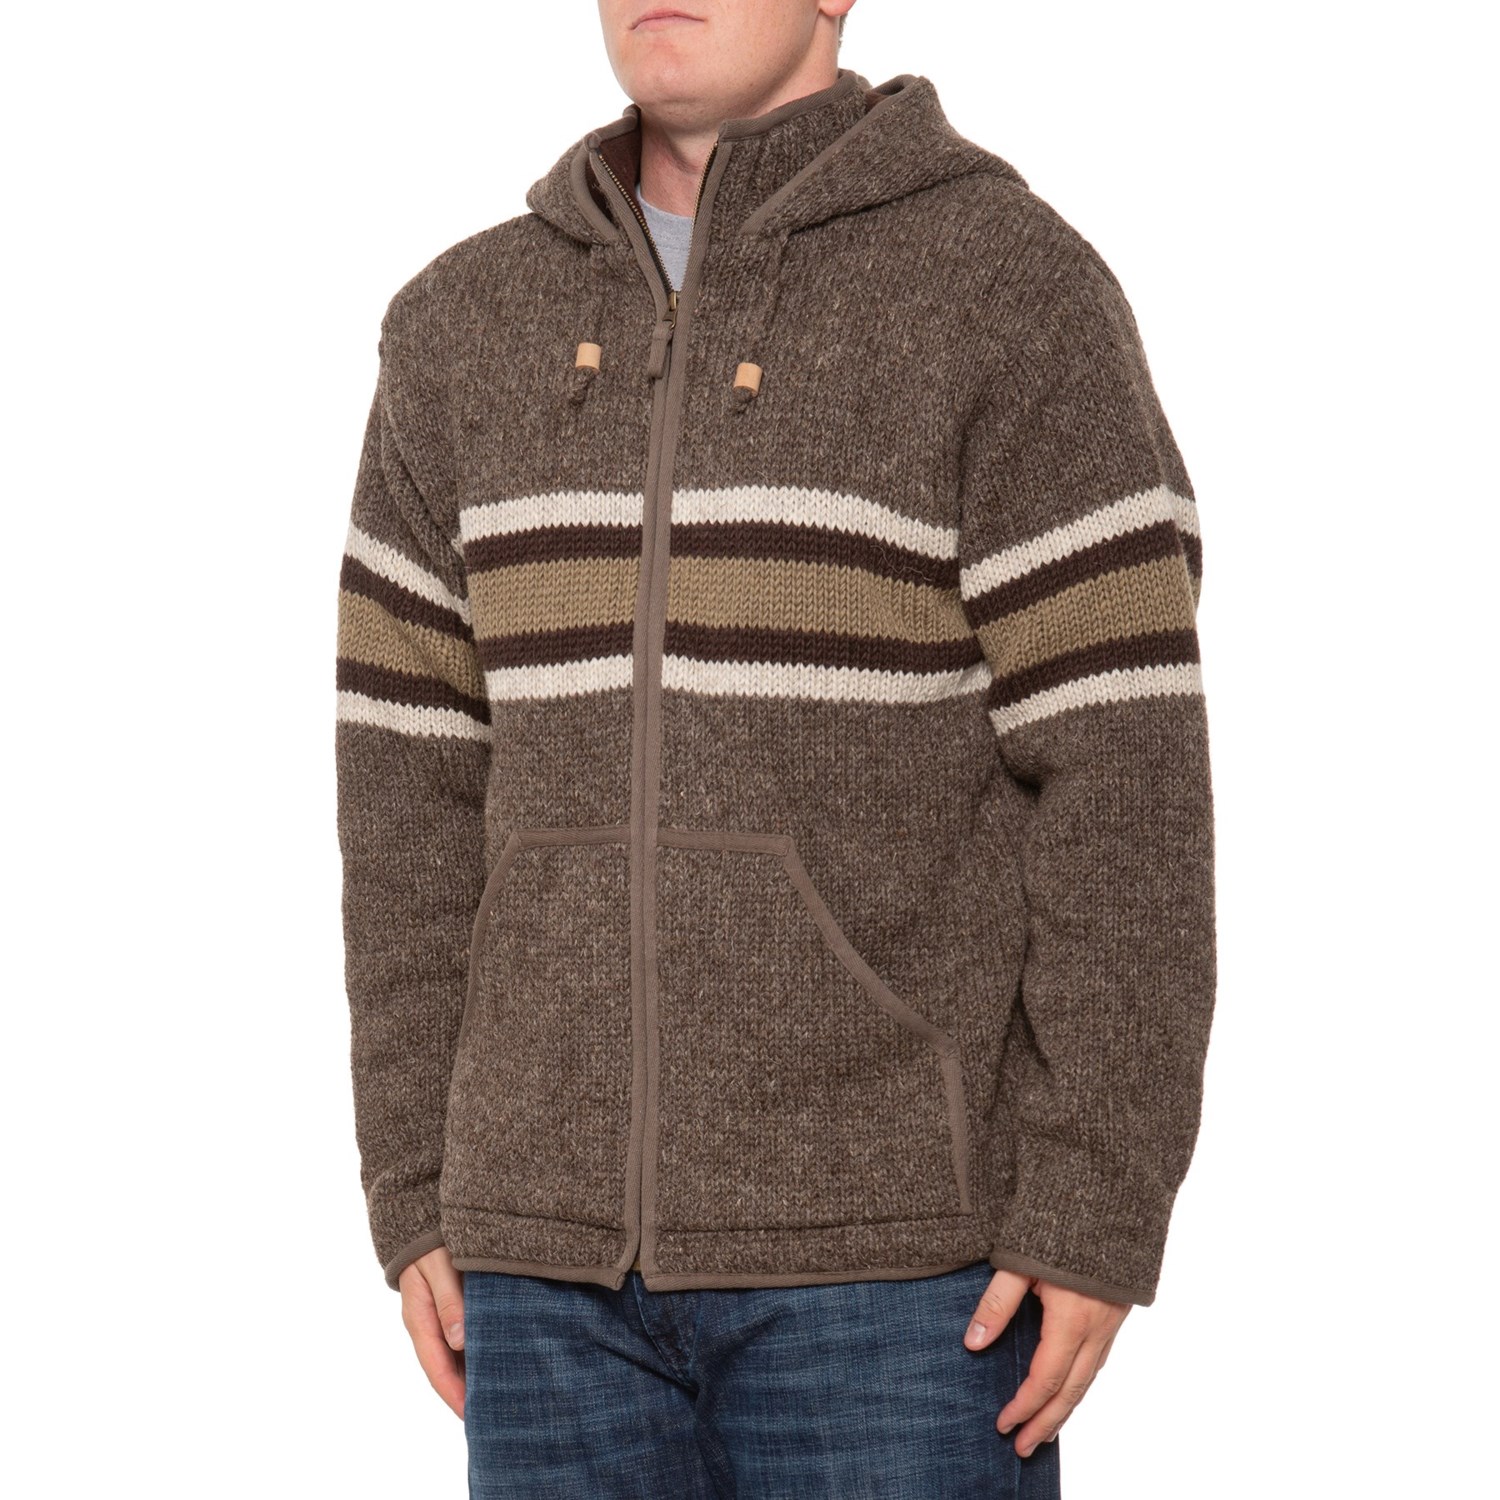 Lost Horizons Gordie Full-Zip Fleece-Lined Sweater - Wool - Save 46%